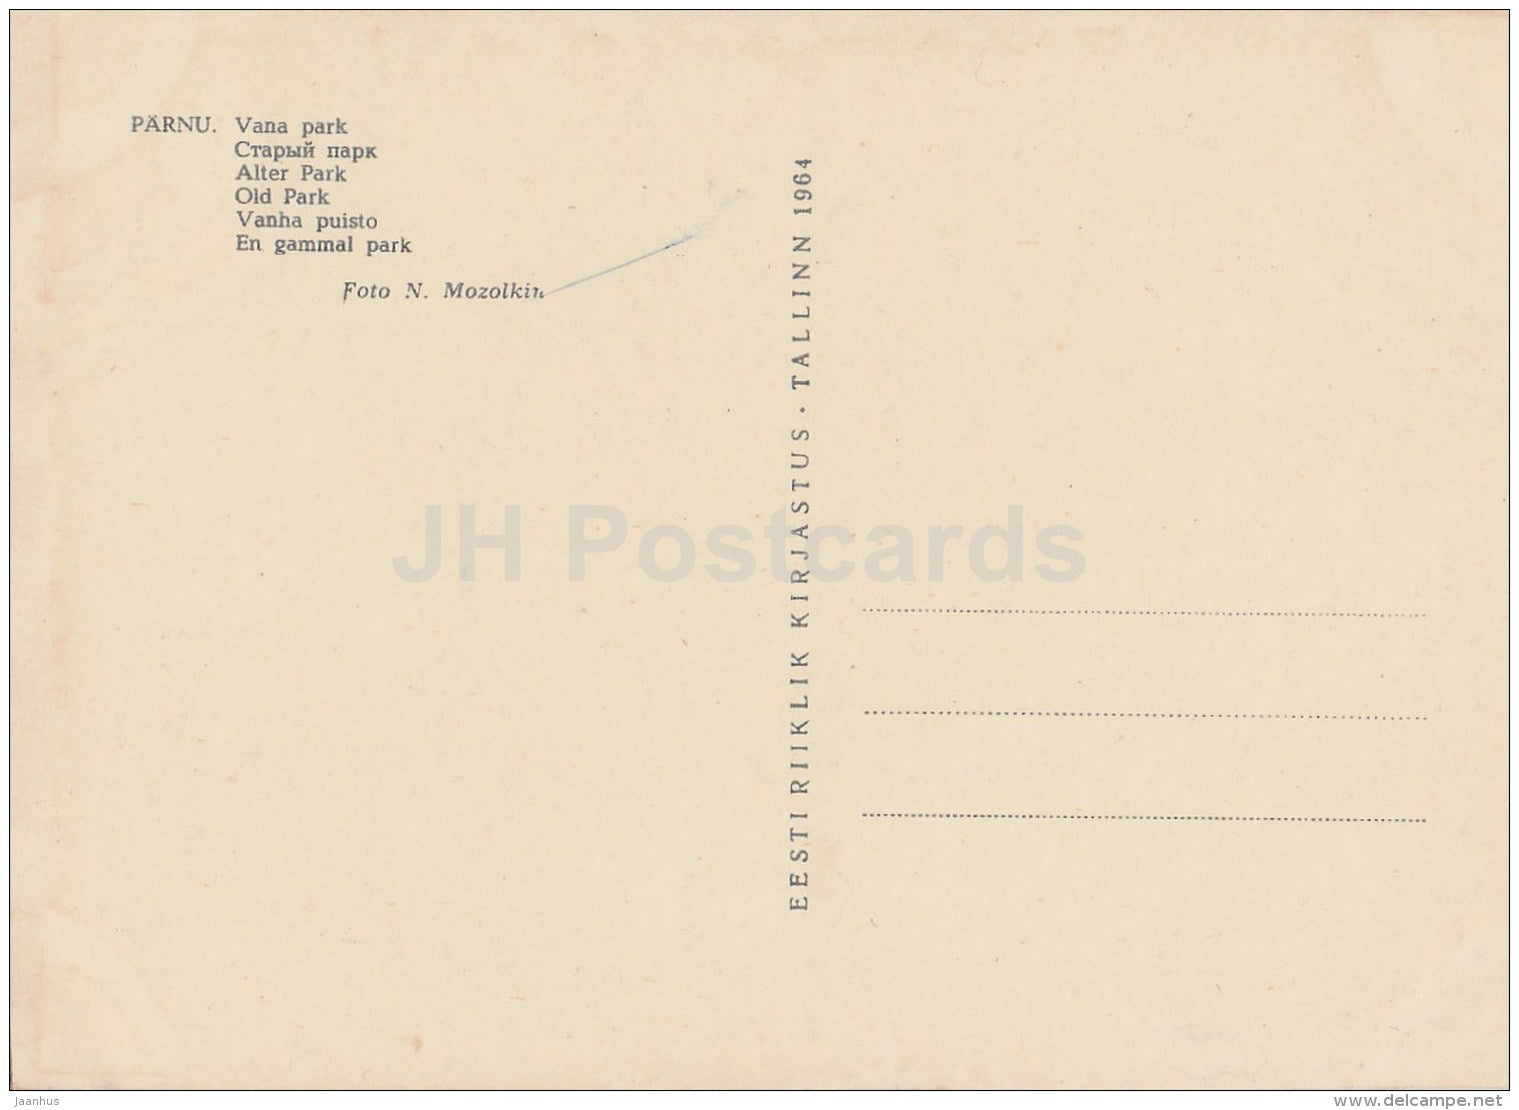 Old Park - Pärnu - 1964 - Estonia USSR - unused - JH Postcards